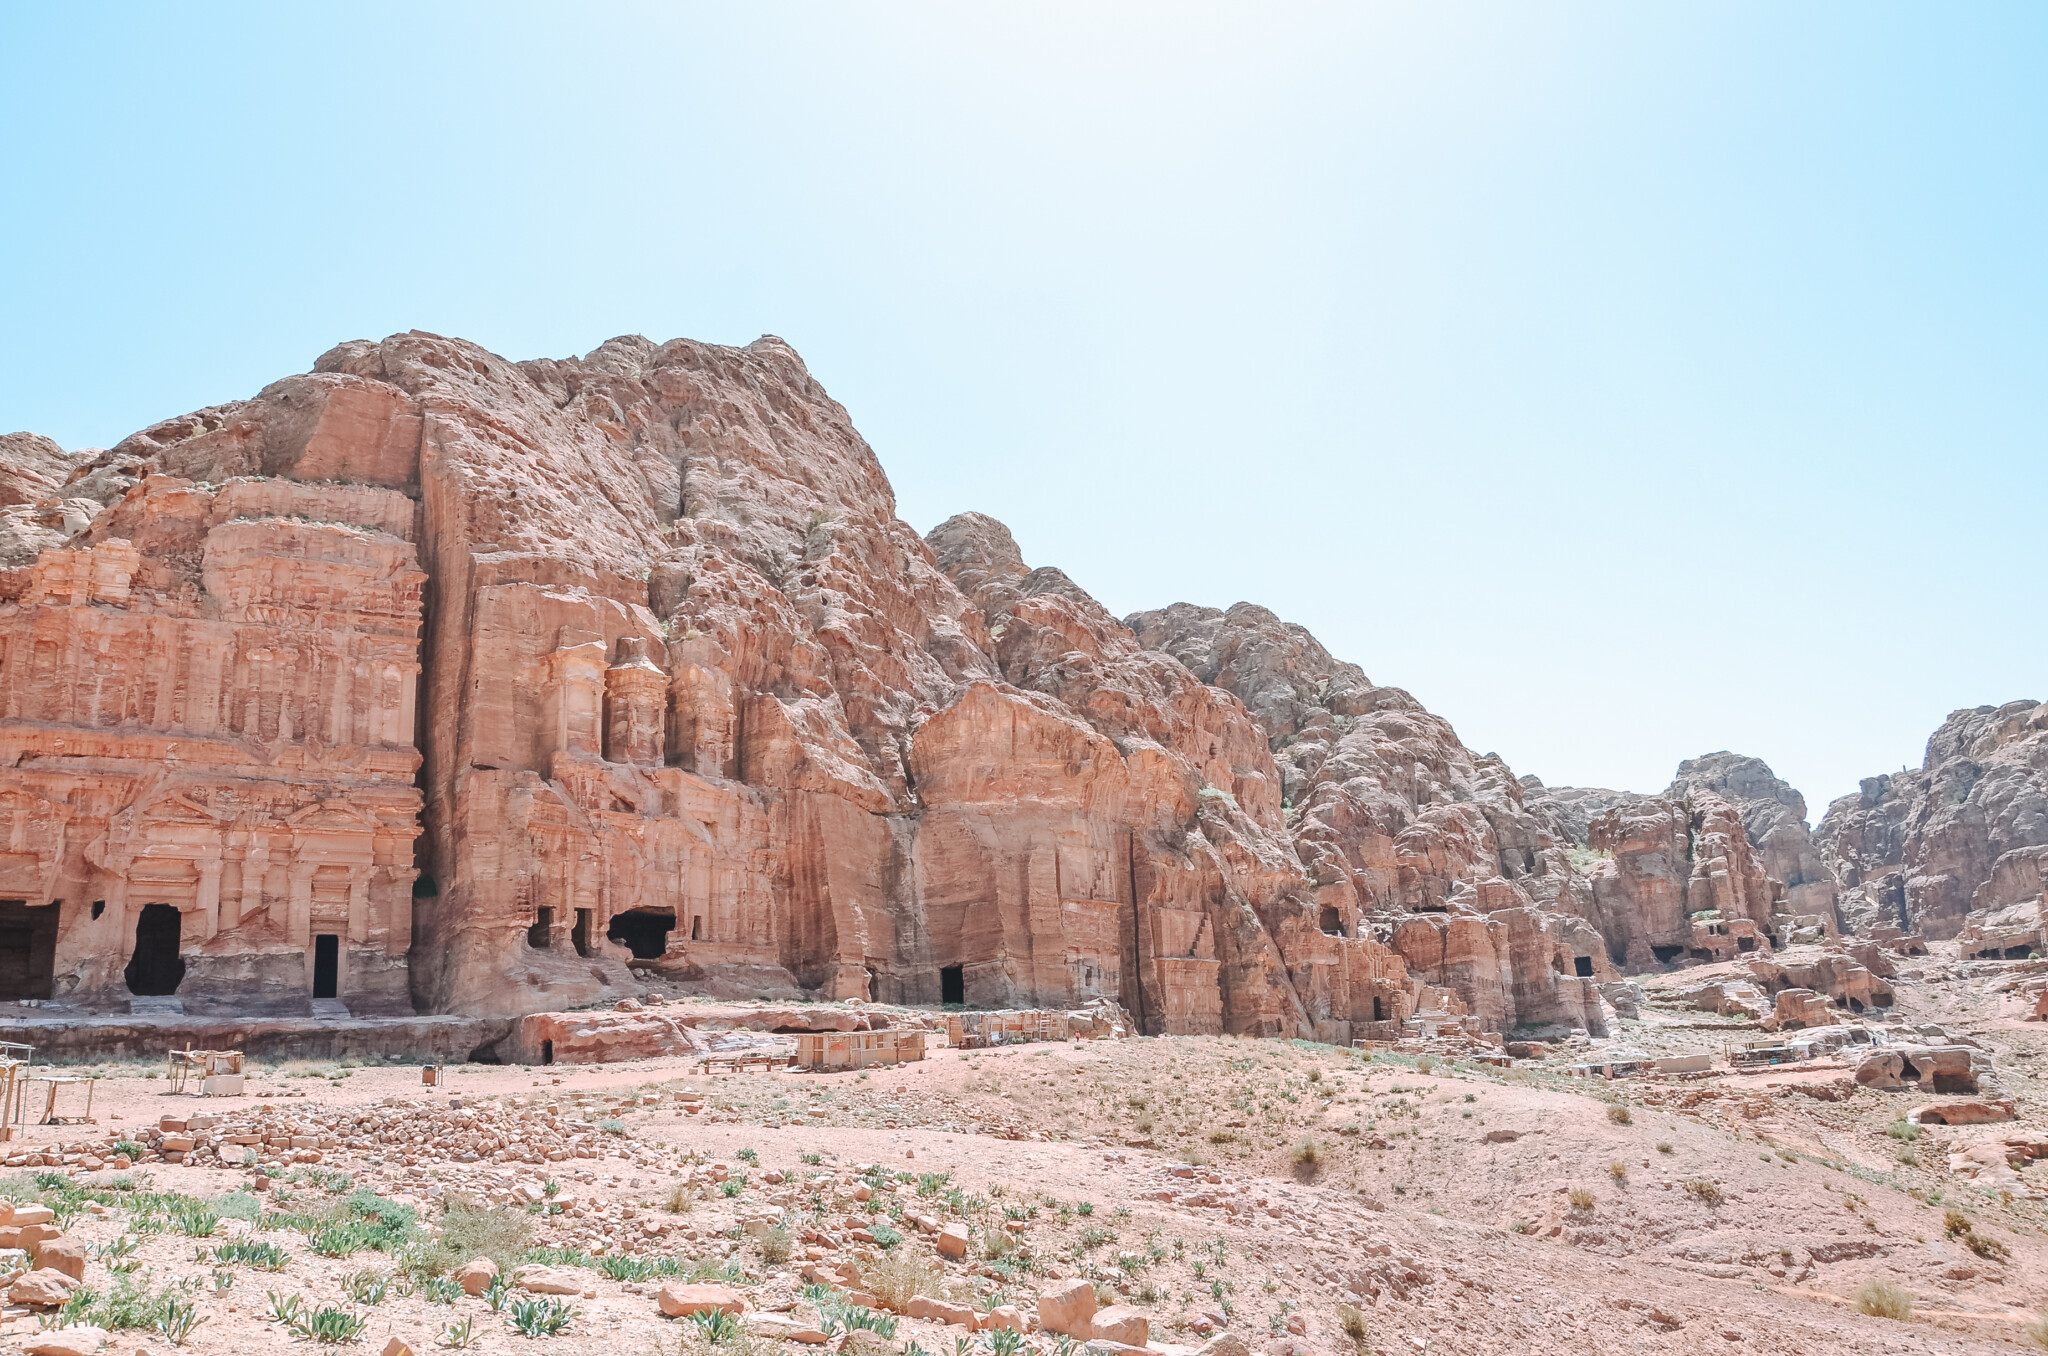 Die Felsenstadt Petra in Jordanien